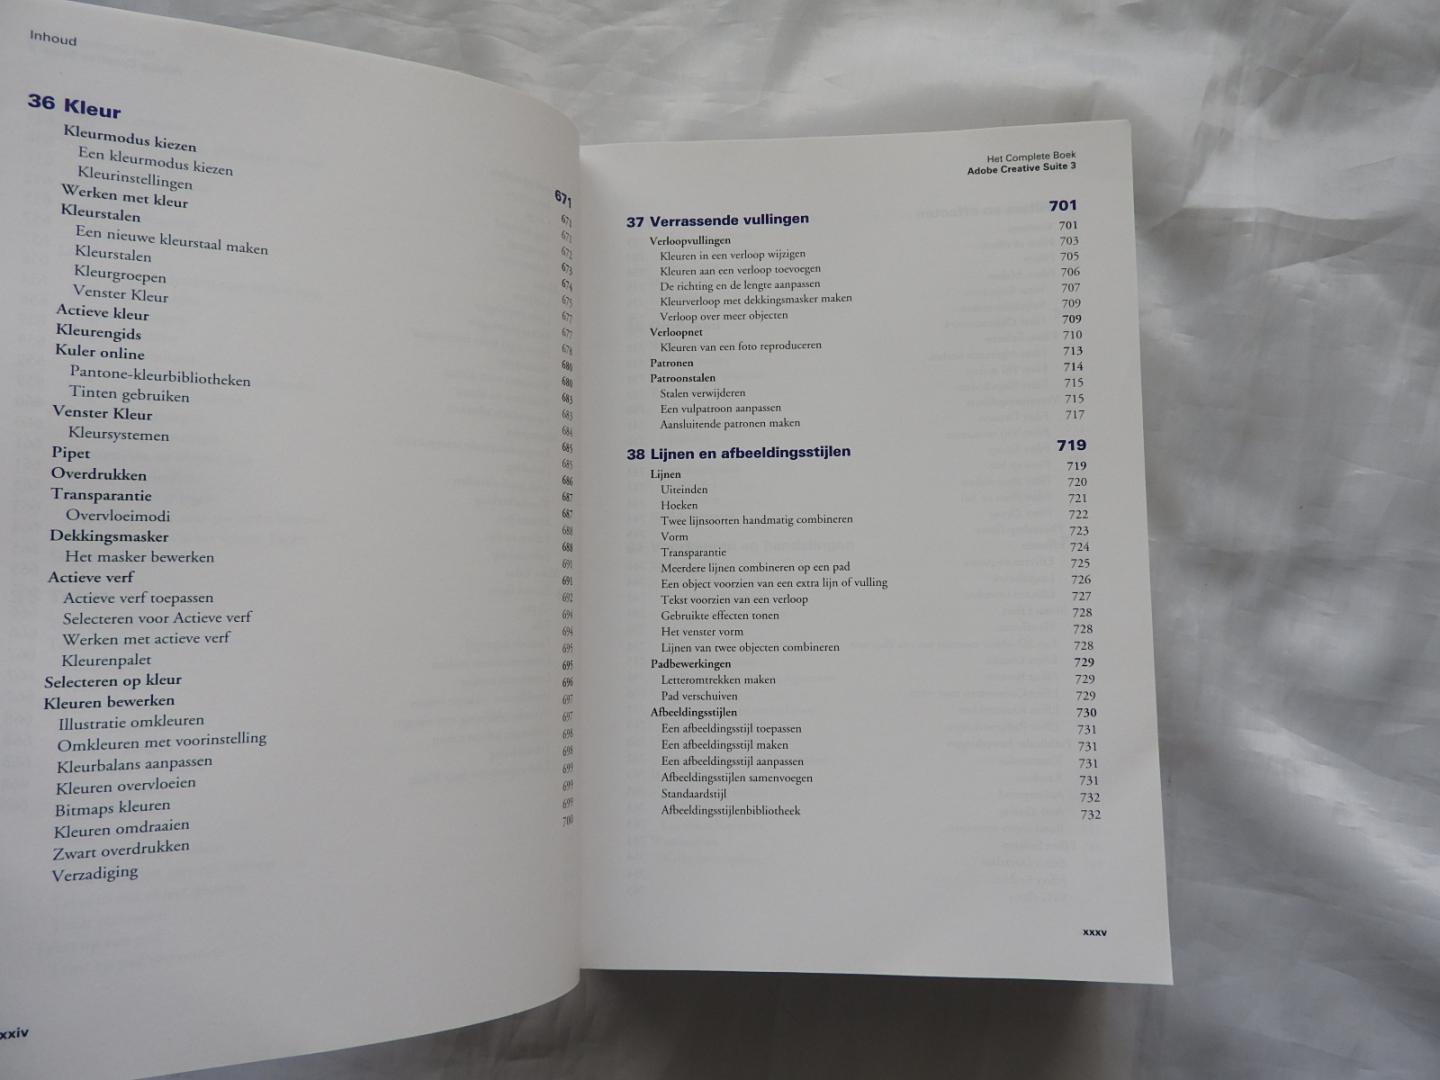 Erwin Olij E - Couprie - Maas peter - Adobe Creative Suite 3 Design Edition - het Complete boek